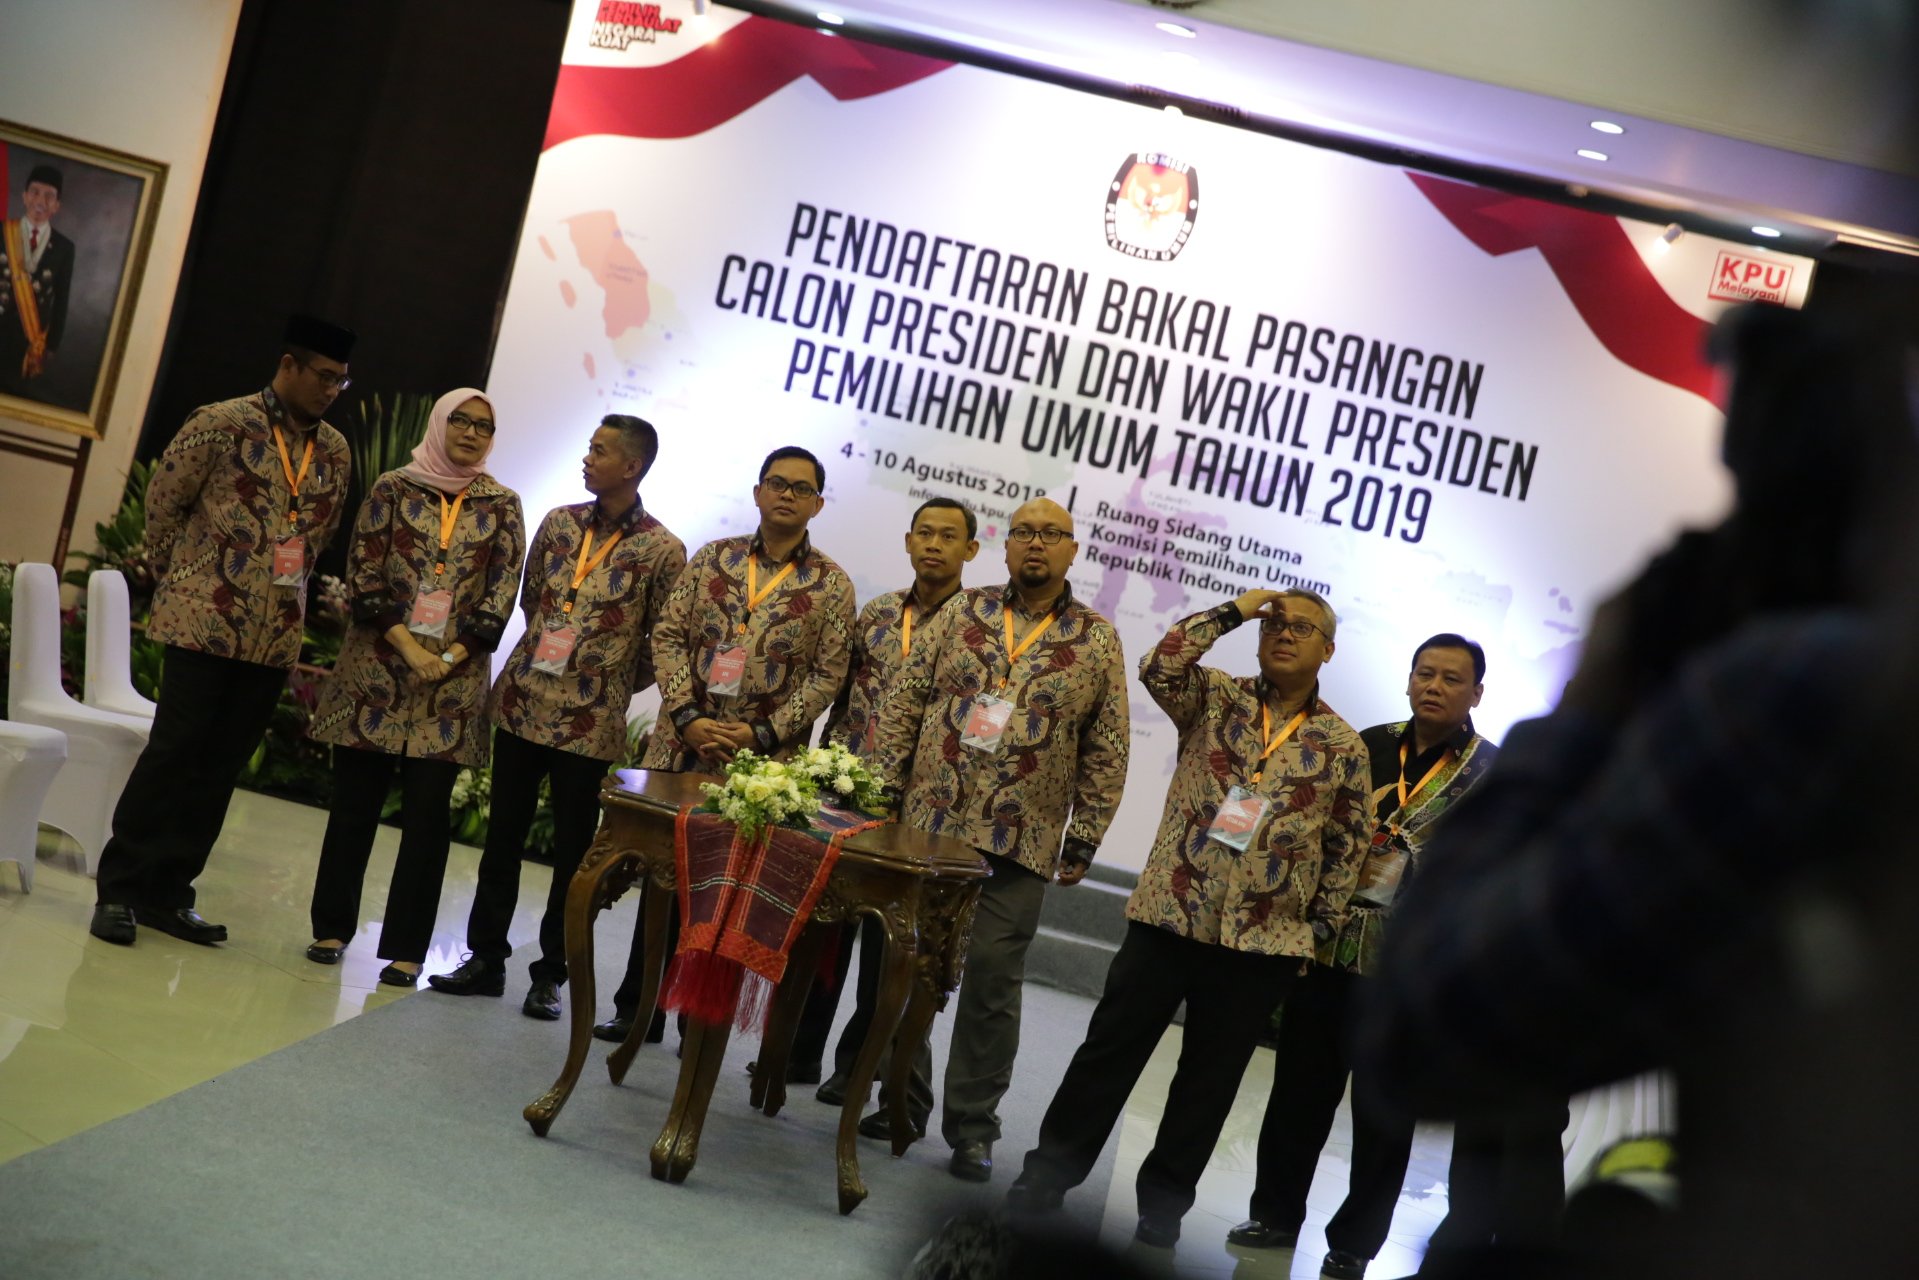 Ketua KPU, Arief Budiman, (kedua dari kanan) bersama pimpinan KPU menunggu datangnya Pasangan Calon Presiden dan Calon Wakil Presiden di KPU Pusat, Jakarta, Jumat (10/08)